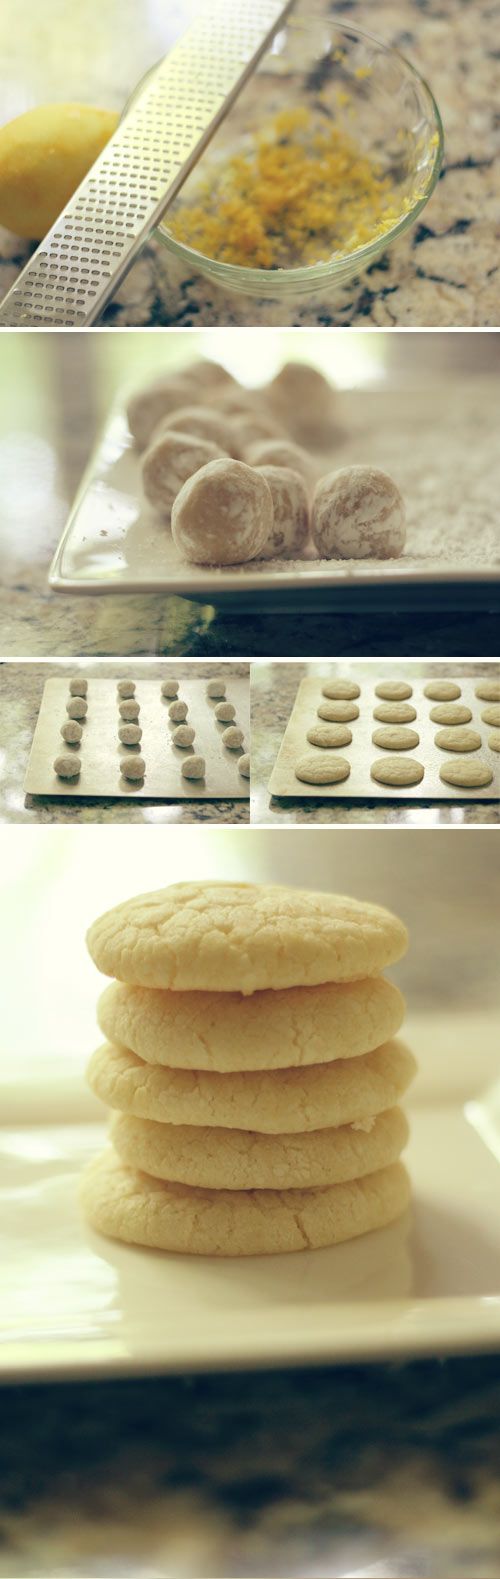 lemon crinkle cookies #cookies #baking #lemon